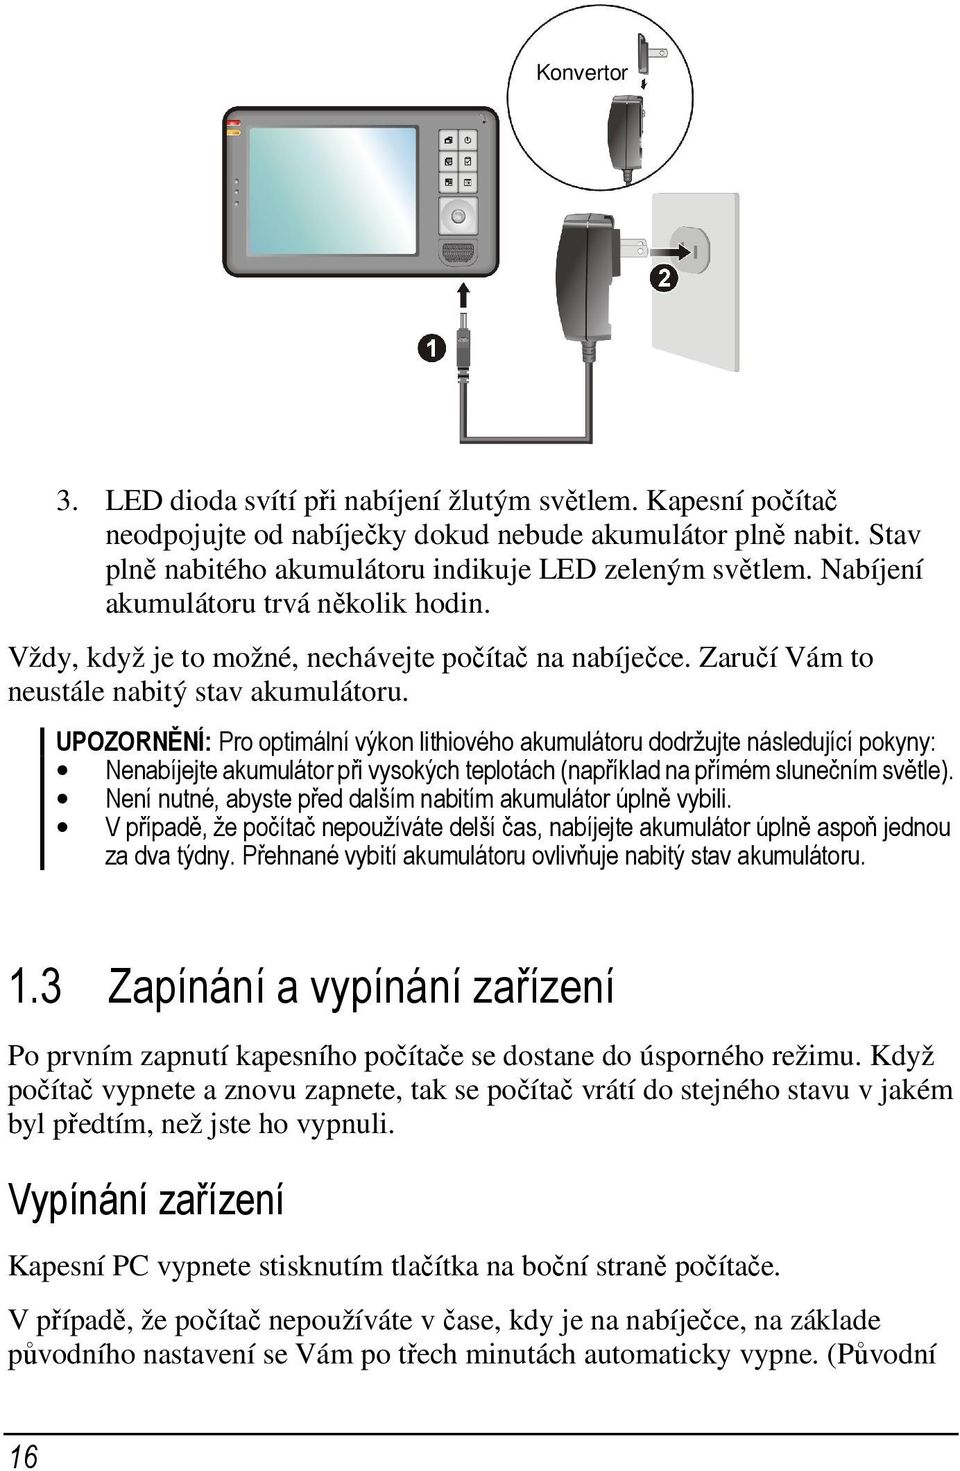 UPOZORNĚNÍ: Pro optimální výkon lithiového akumulátoru dodržujte následující pokyny: Nenabíjejte akumulátor při vysokých teplotách (například na přímém slunečním světle).